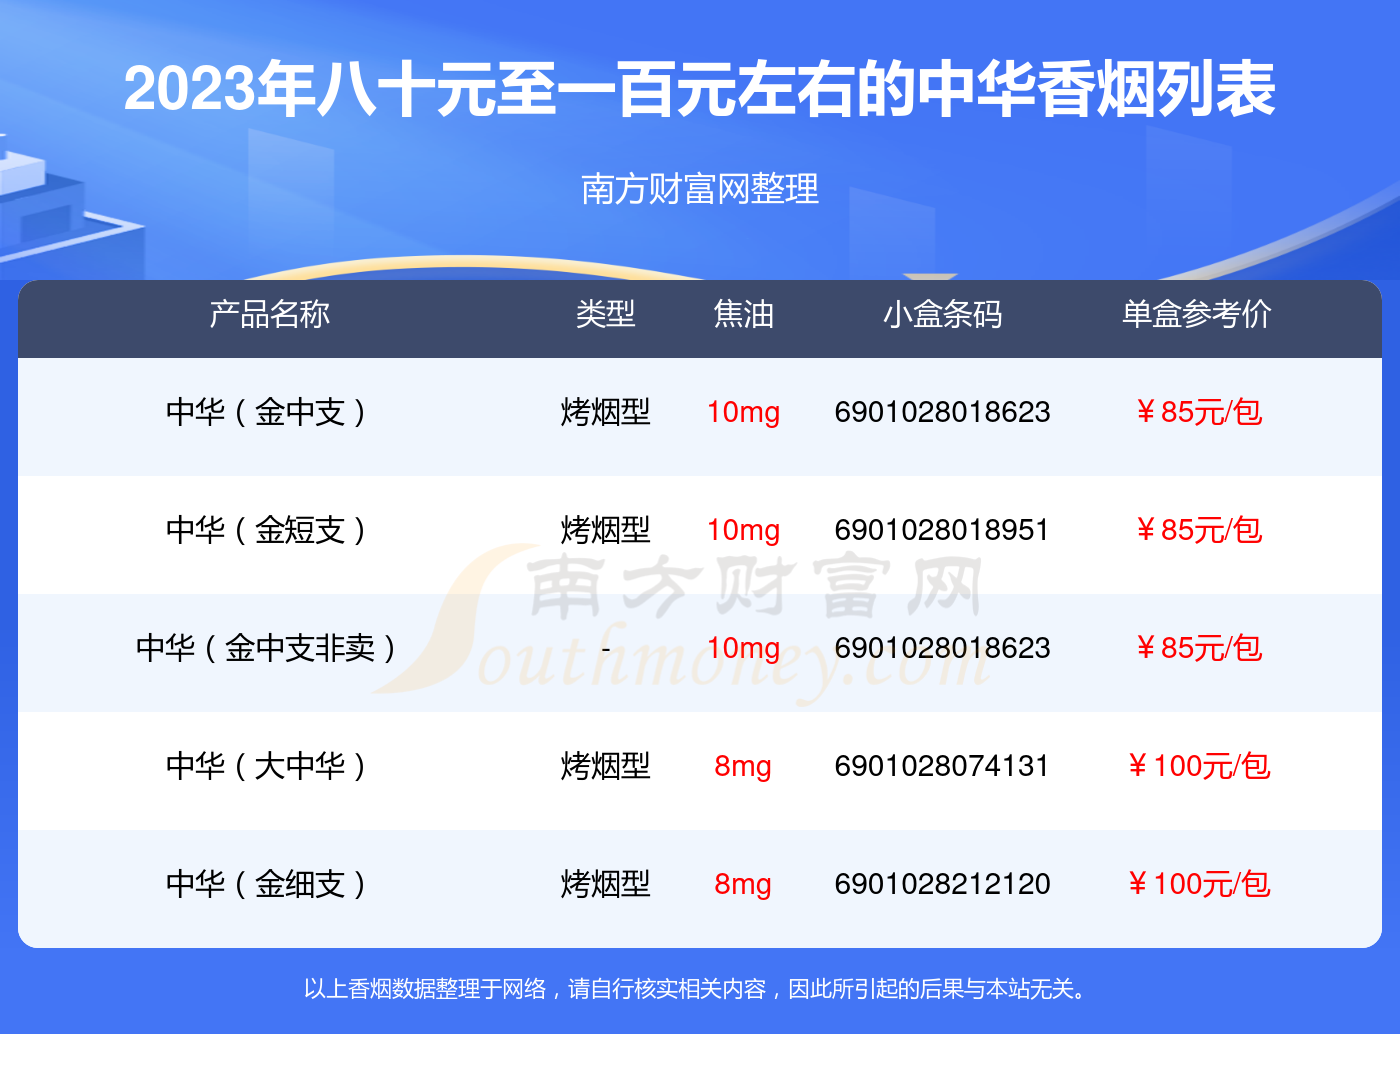 2023年八十元至一百元左右的中华香烟列表一览